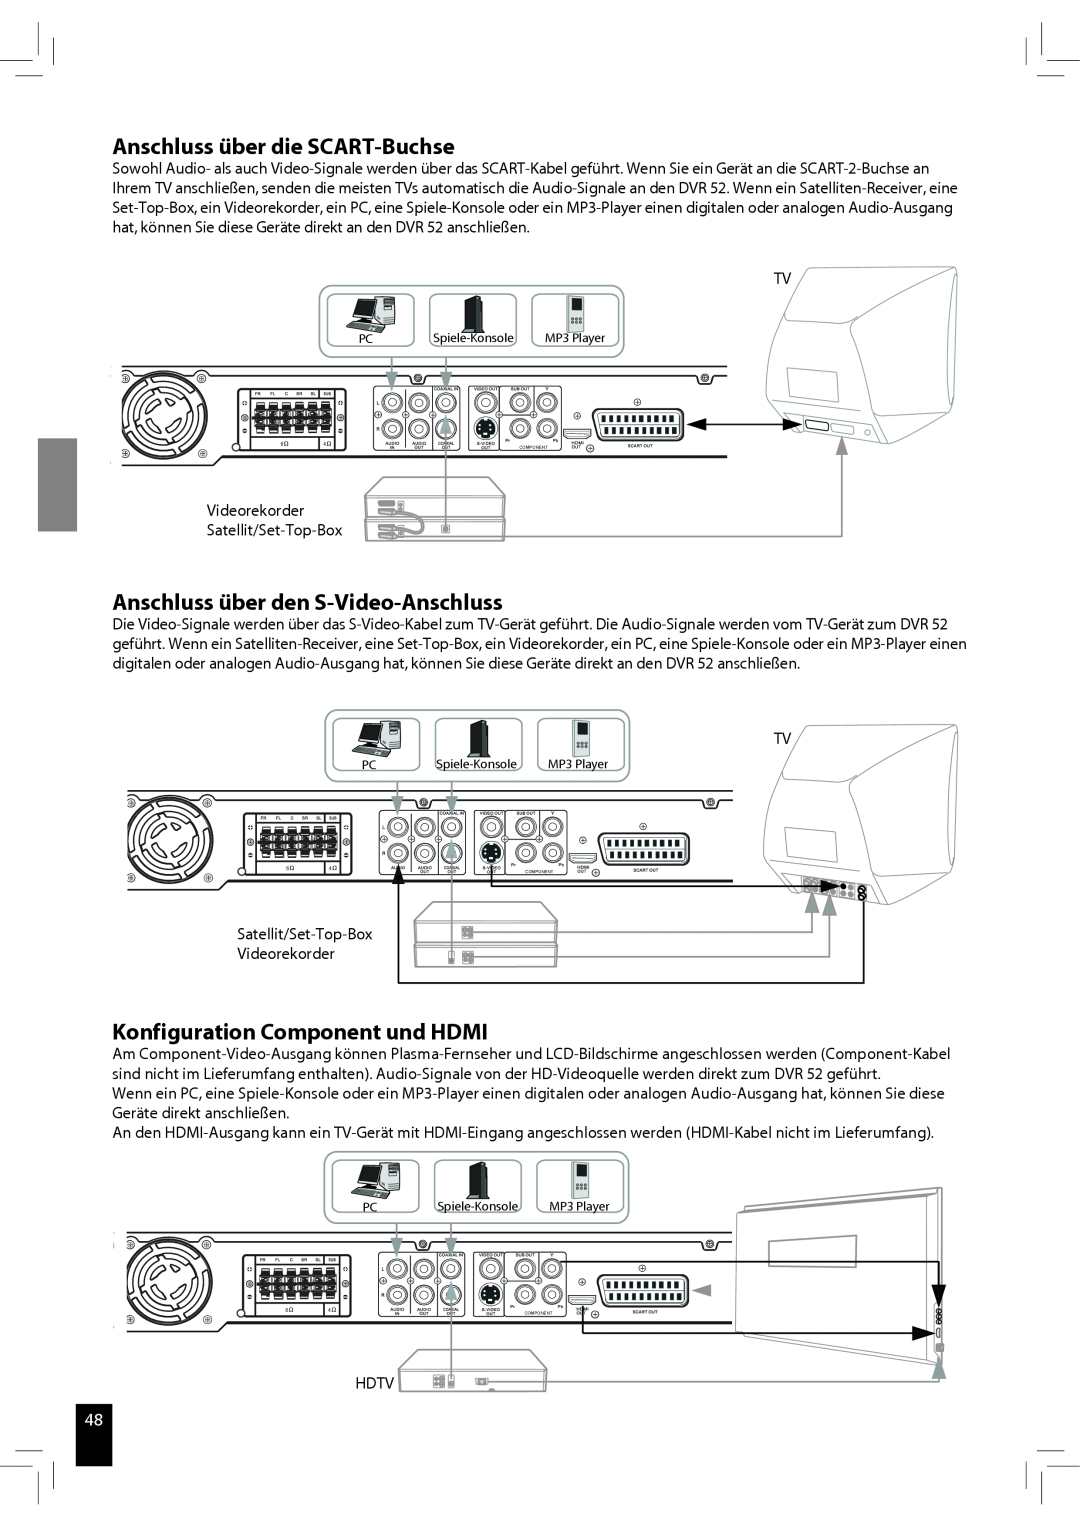 JAMO S 502 Anschluss über die SCART-Buchse, Anschluss über den S-Video-Anschluss, Konfiguration Component und HDMI, Hdtv 